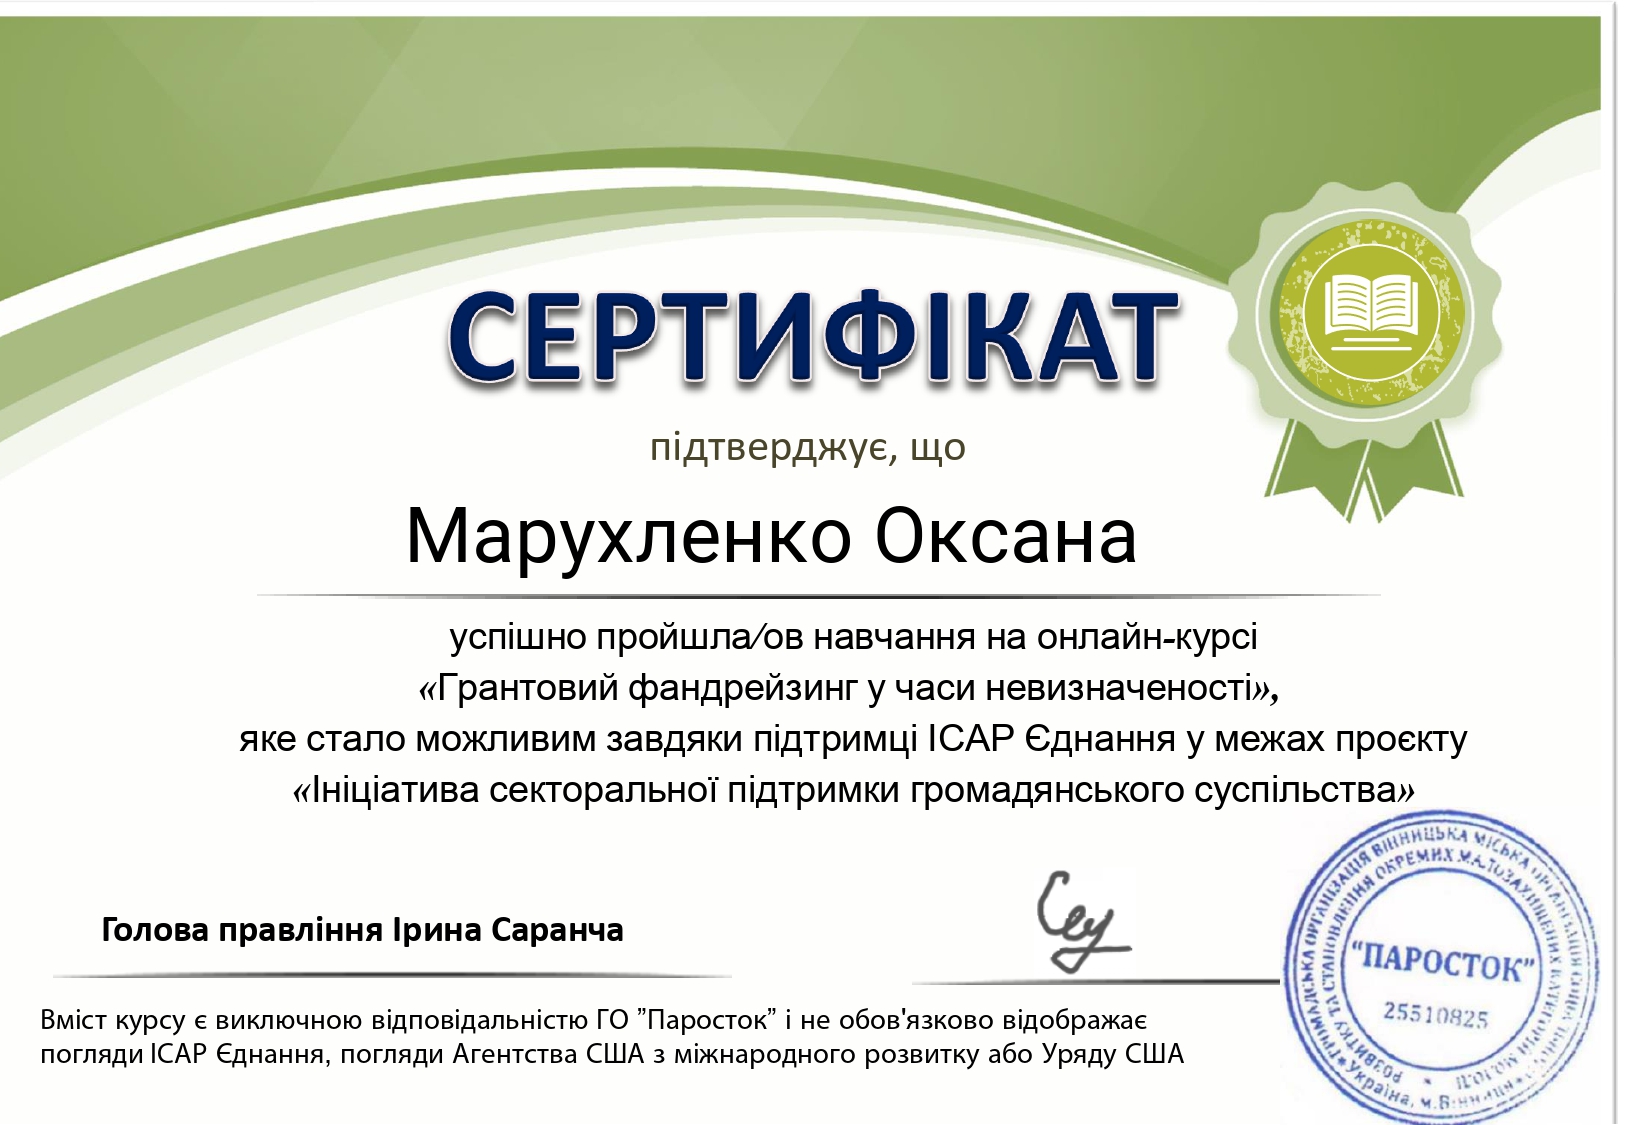 Сертифікат_Грантовий_фандрейзинг_у_часи_невизначеності_page-0001.jpg